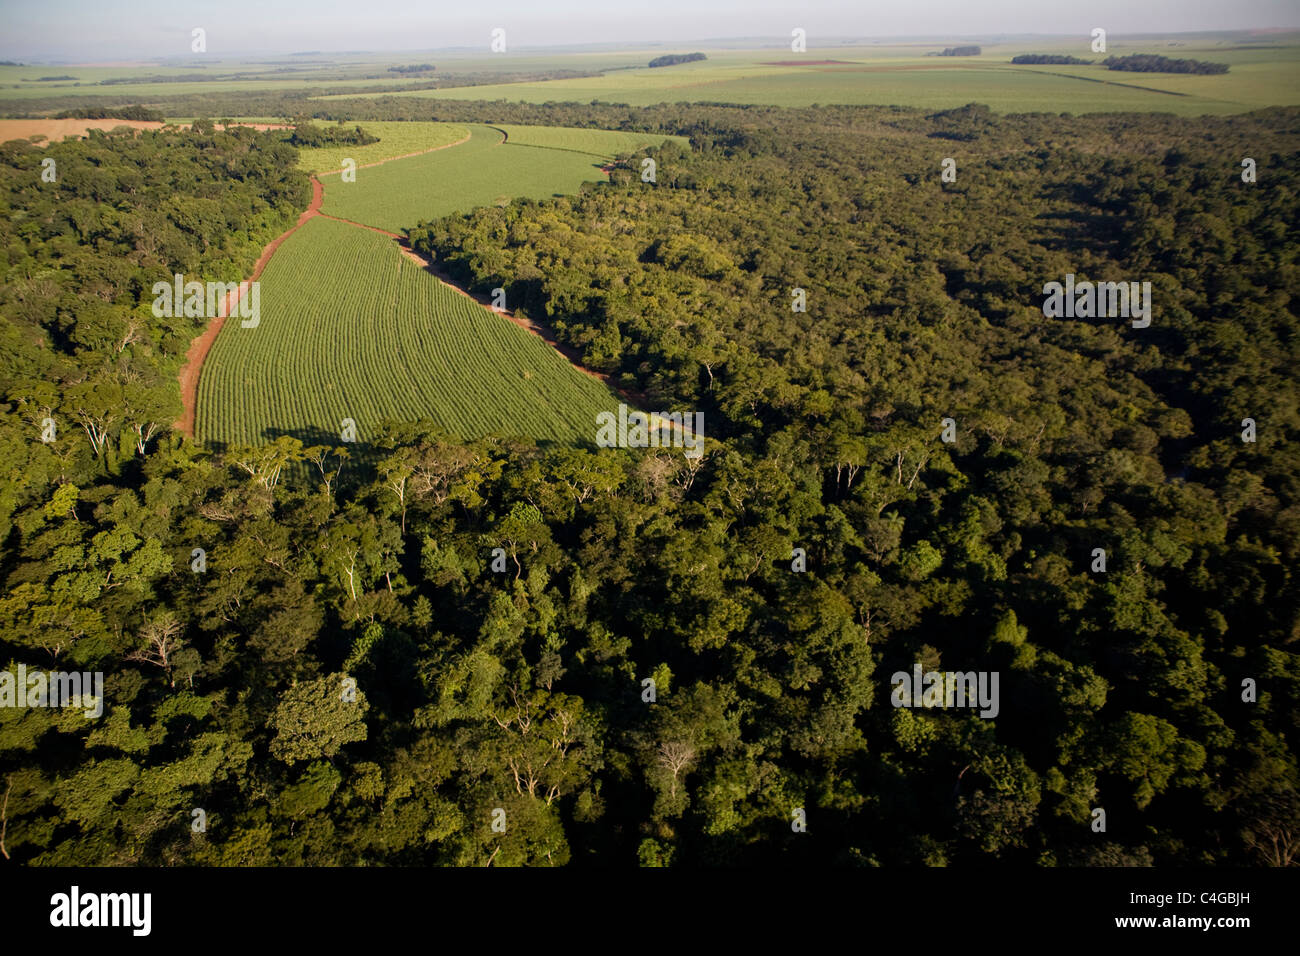 Zuckerrohr-Plantage Eingriff in native Regenwald in der Nähe von Ribeirao Preto, Bundesstaat Sao Paulo, Brasilien. Stockfoto